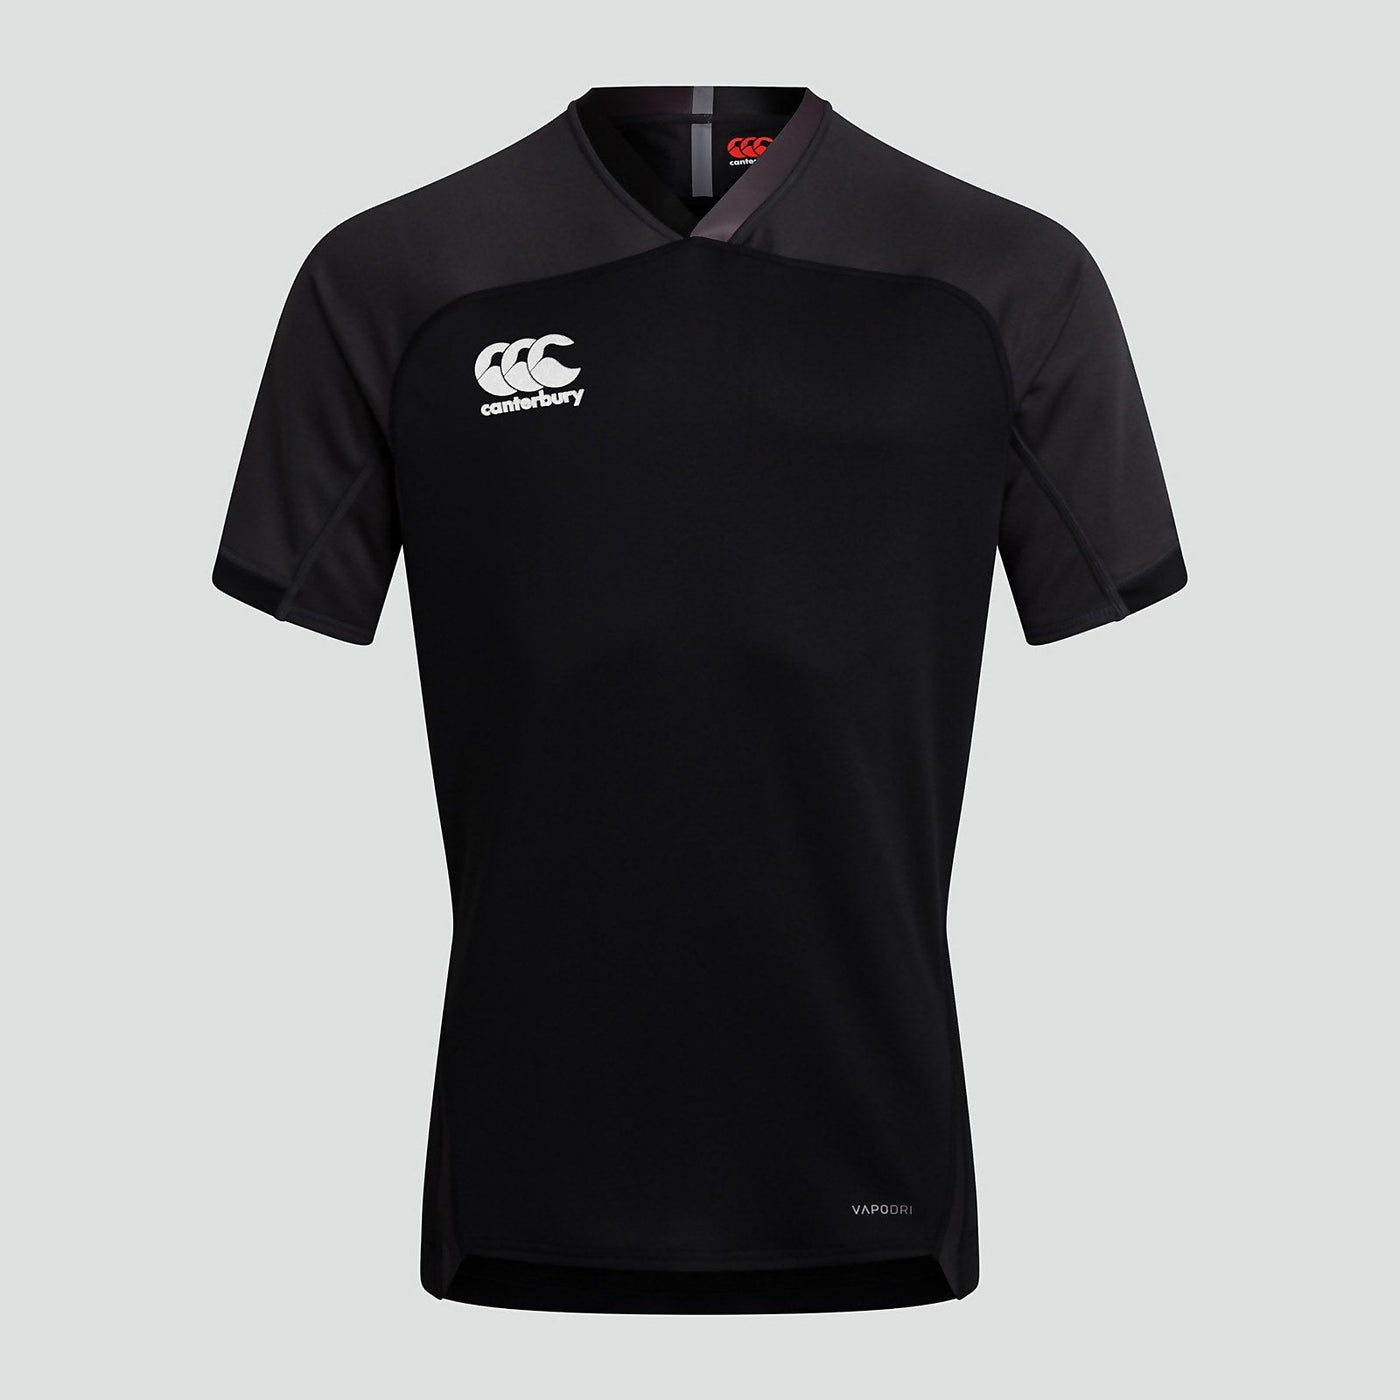 Evader Rugby Shirt Black Senior